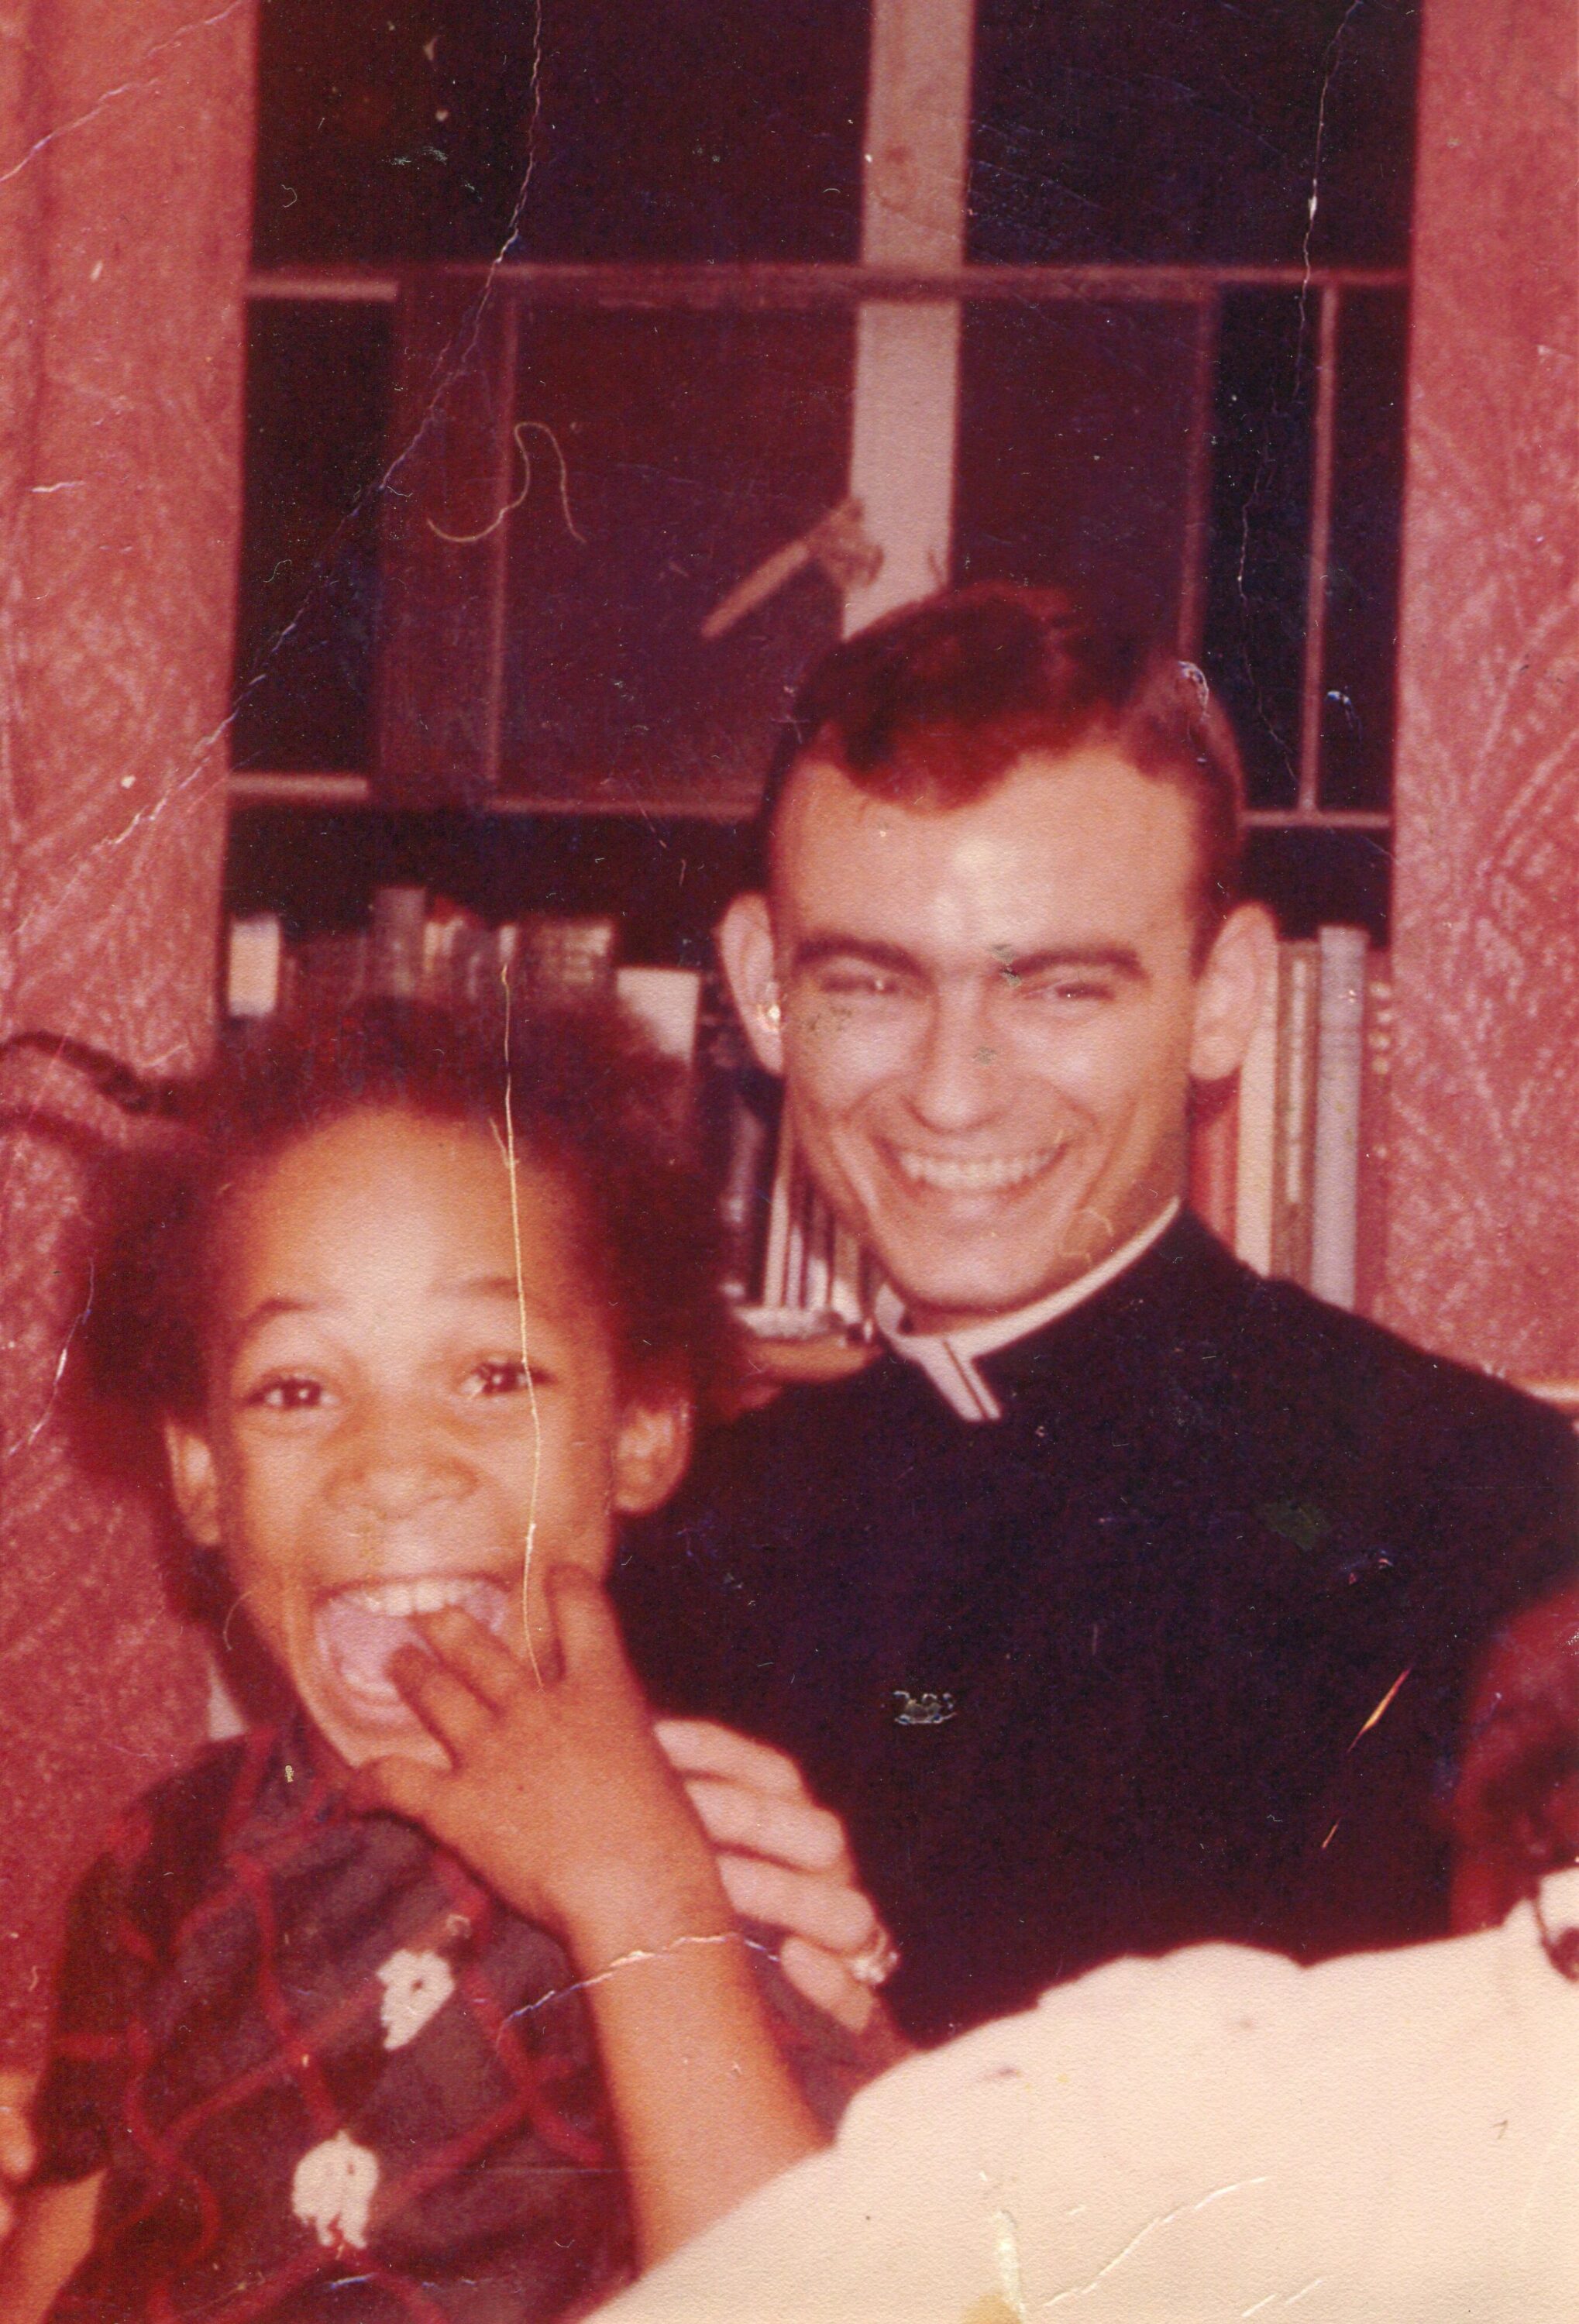 A photo of Sheyann Webb with seminarian and civil rights activist Jonathan Daniels.